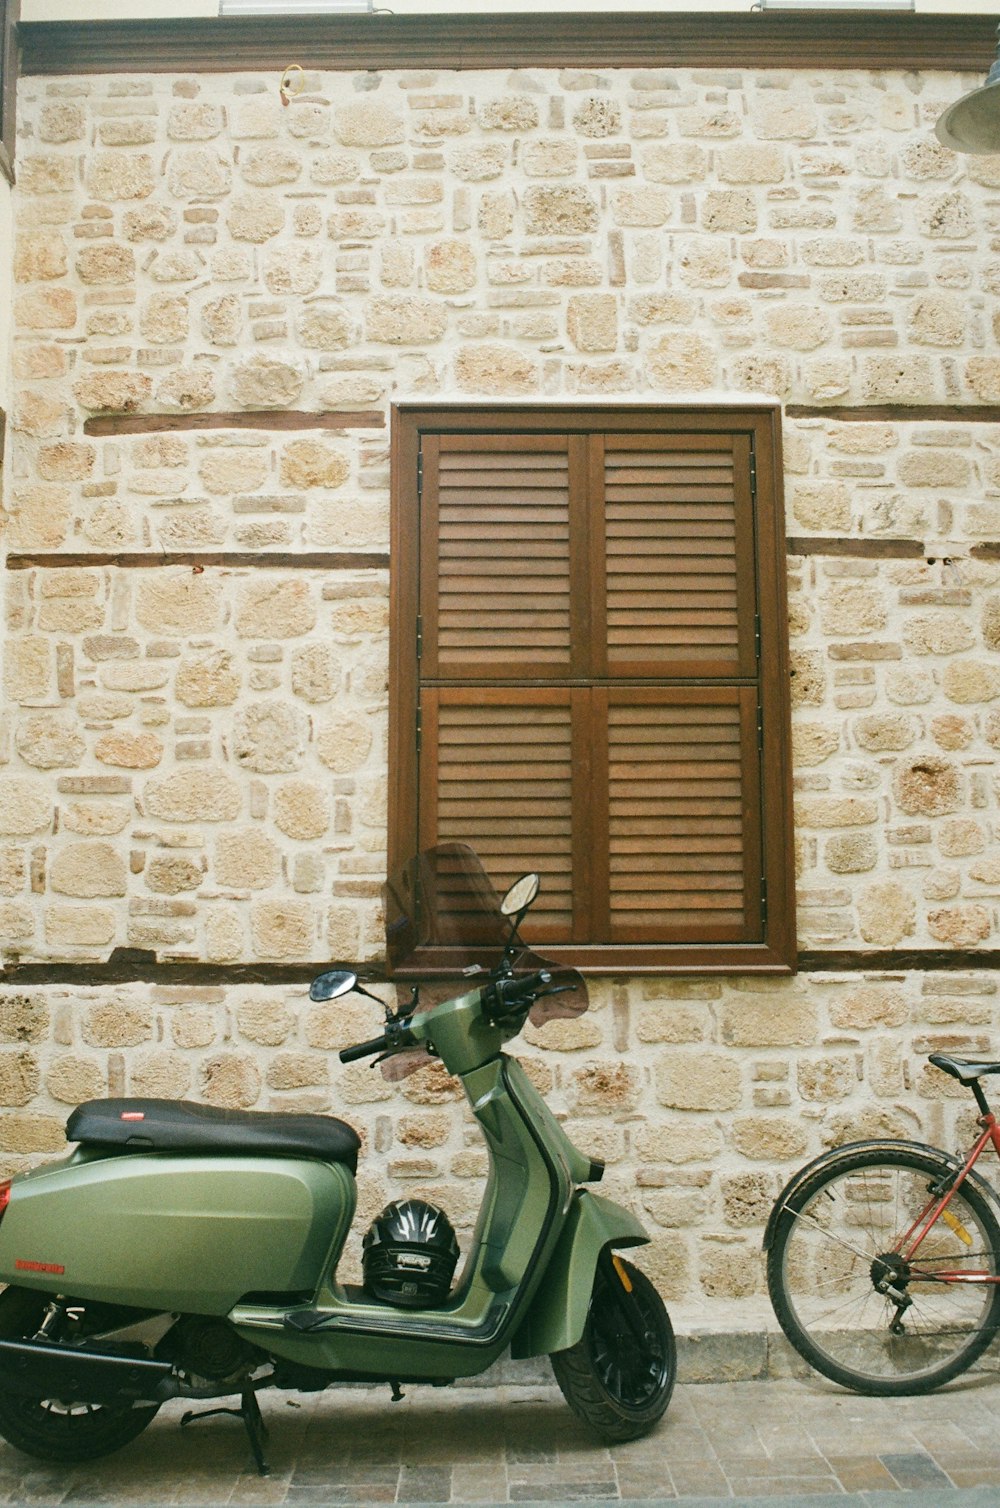 自転車の隣に停められた緑色のスクーター